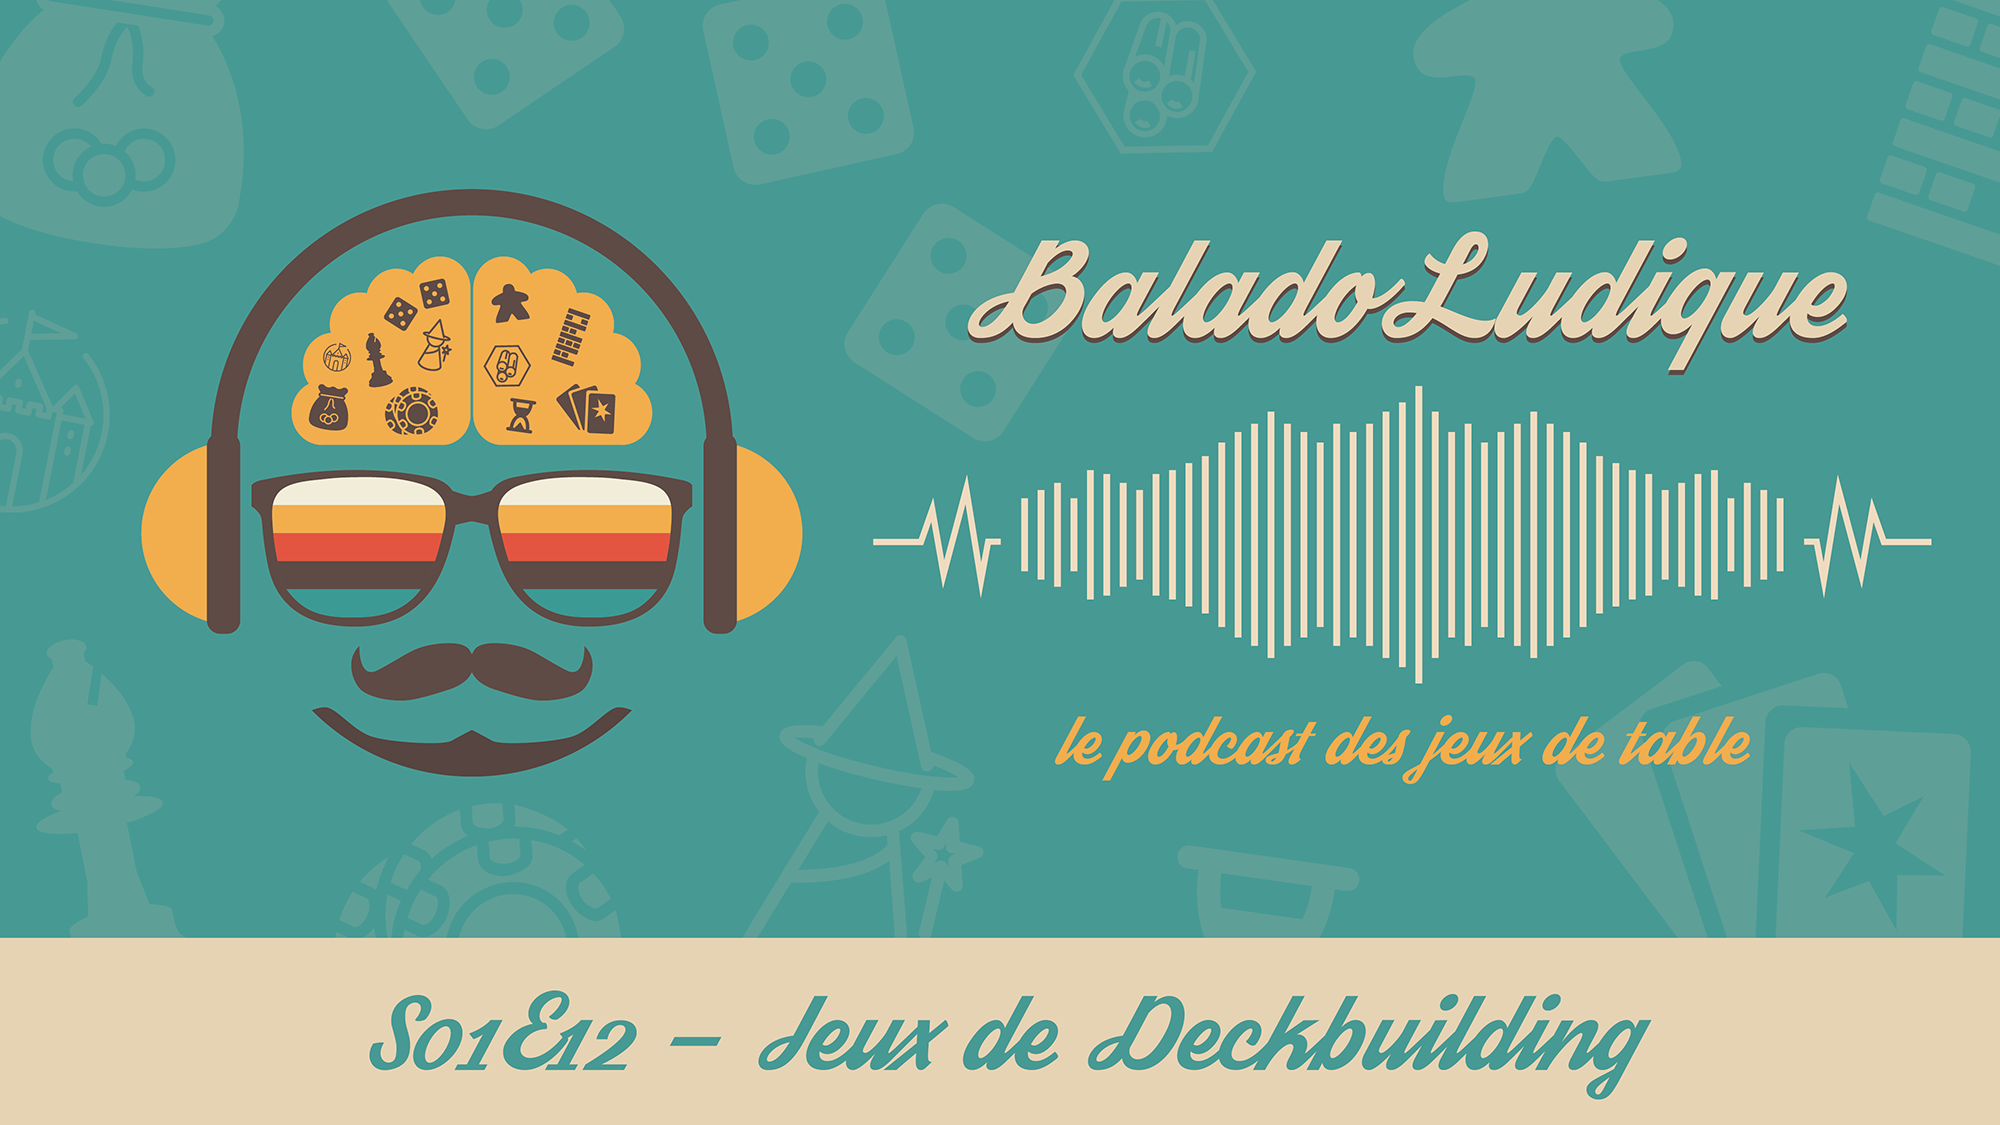 Jeux de Deckbuilding - BaladoLudique - s01e12